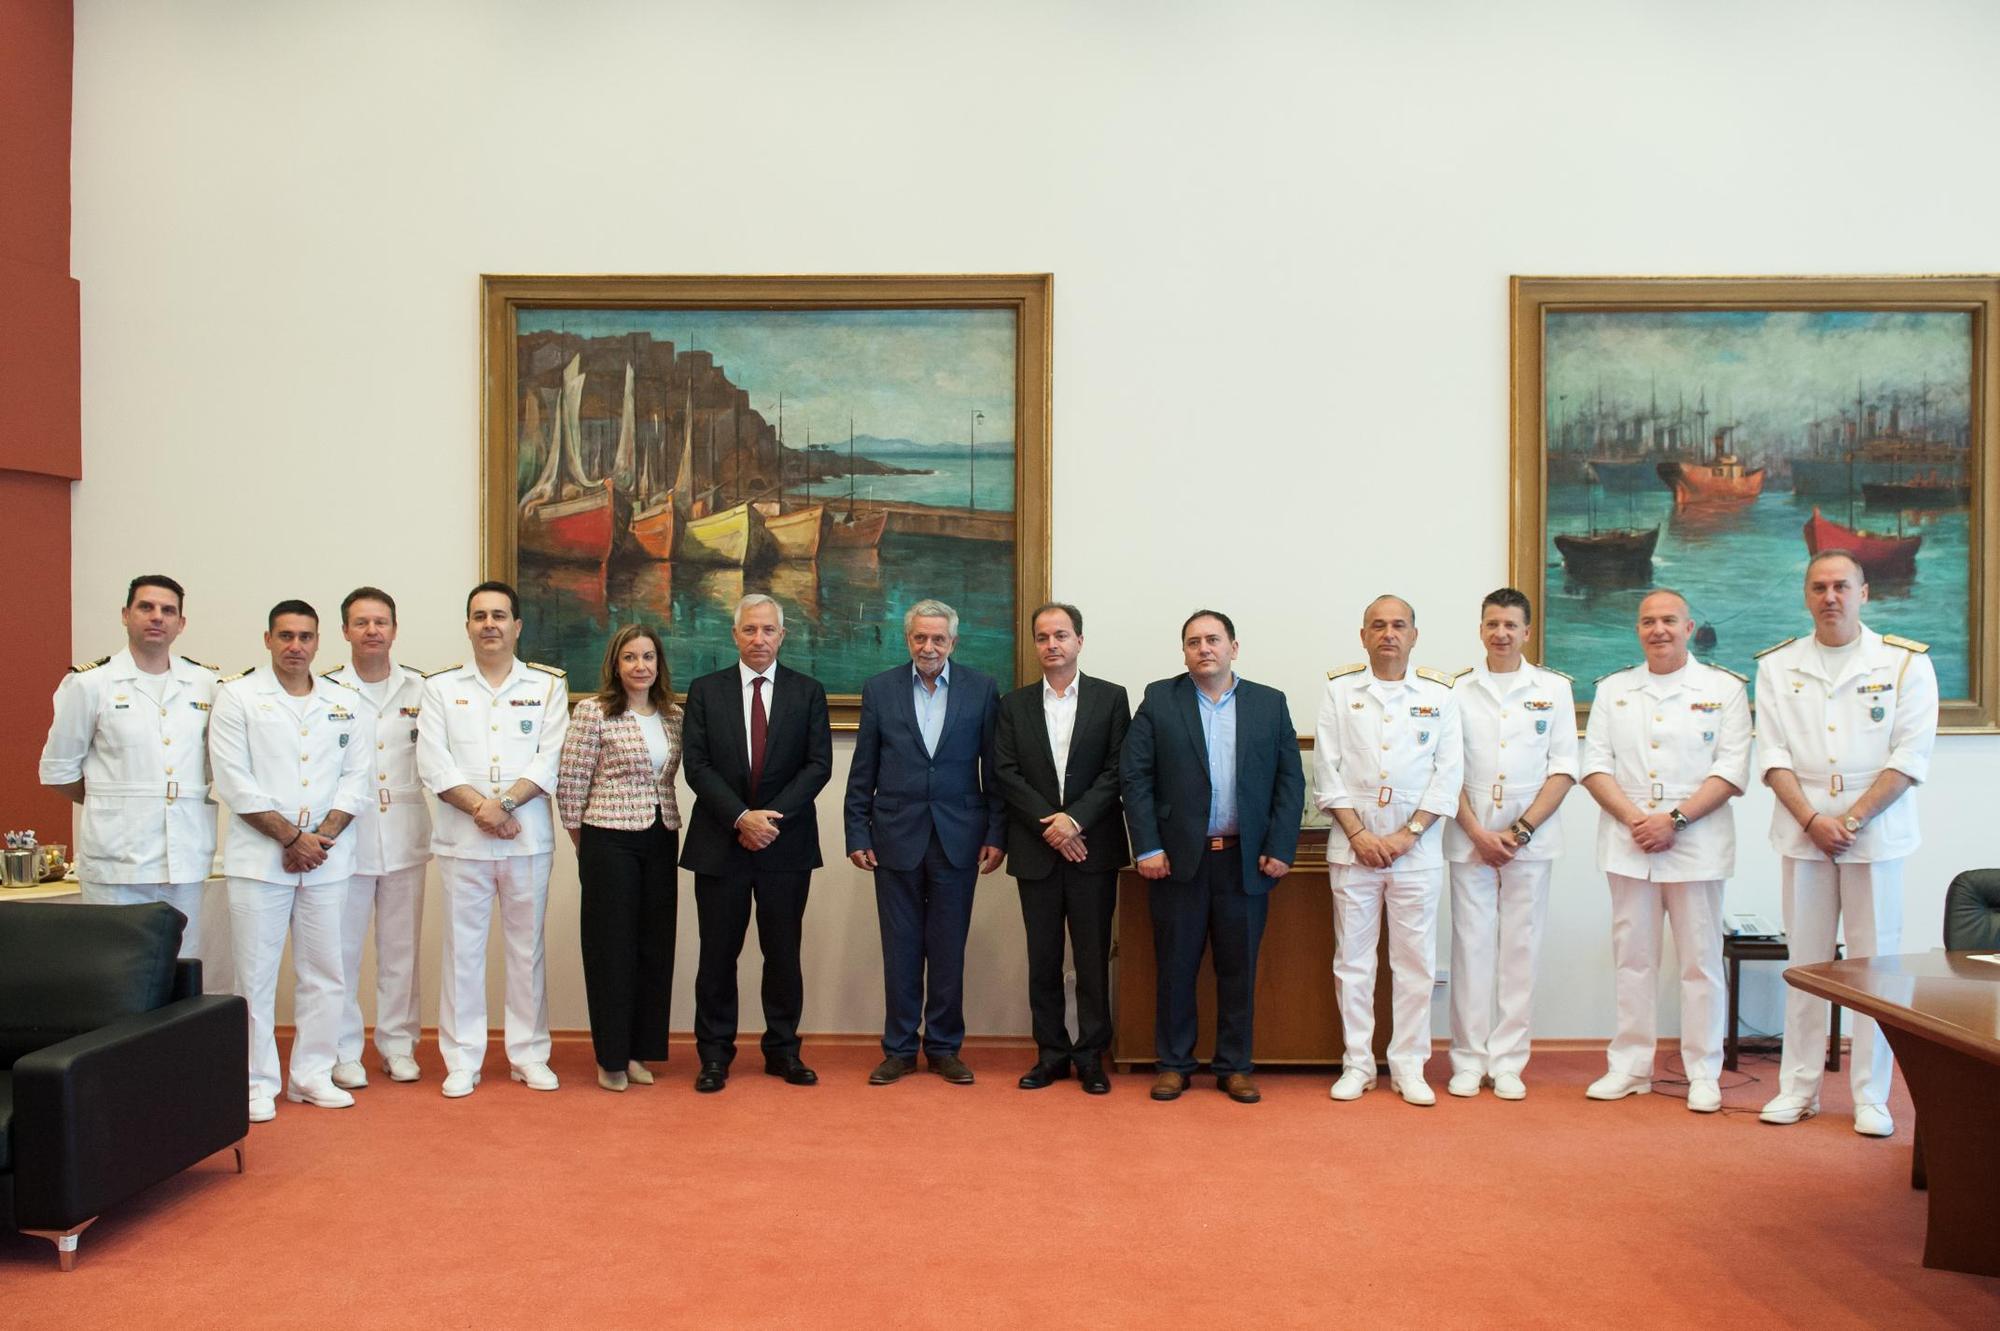 Ο Υπουργός Ναυτιλίας και Νησιωτικής Πολιτικής, κ. Θεόδωρος Δρίτσας, ο Αρχηγός του Λιμενικού Σώματος - Ελληνικής Ακτοφυλακής, Αντιναύαρχος Λ.Σ., κ. Σταμάτιος Ράπτης, και ο Πρόεδρος και Διευθύνων Σύμβουλος του Ομίλου ΟΤΕ, κ. Μιχάλης Τσαμάζ, μαζί με στελέχη του Υπουργείου και του Λιμενικού Σώματος.